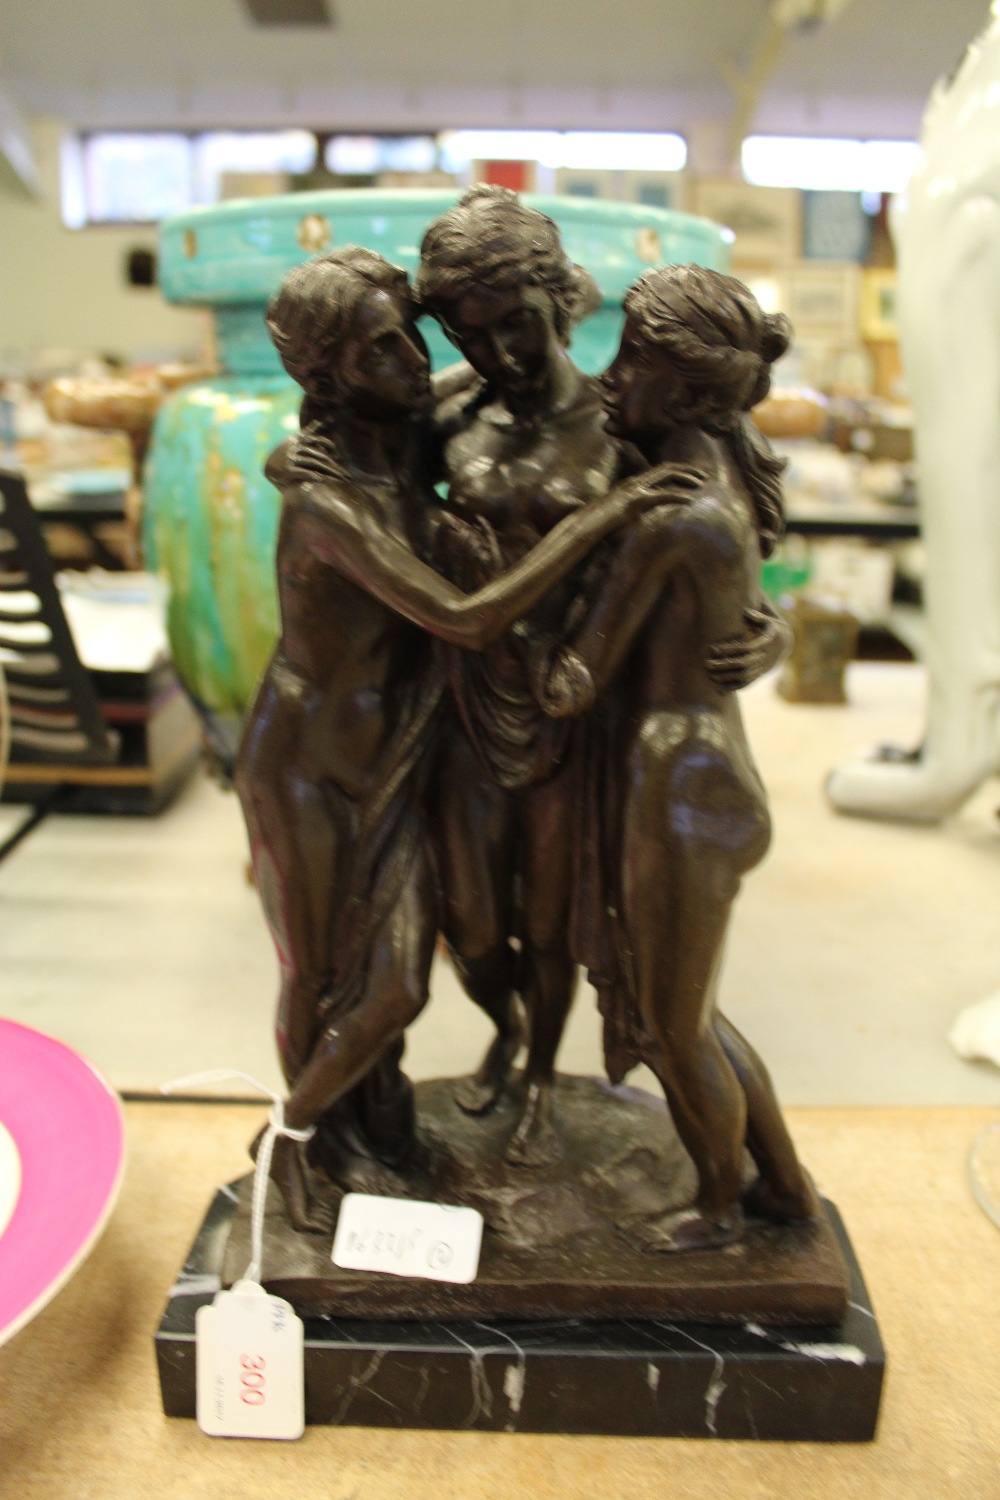 Bronze figure - Three Graces